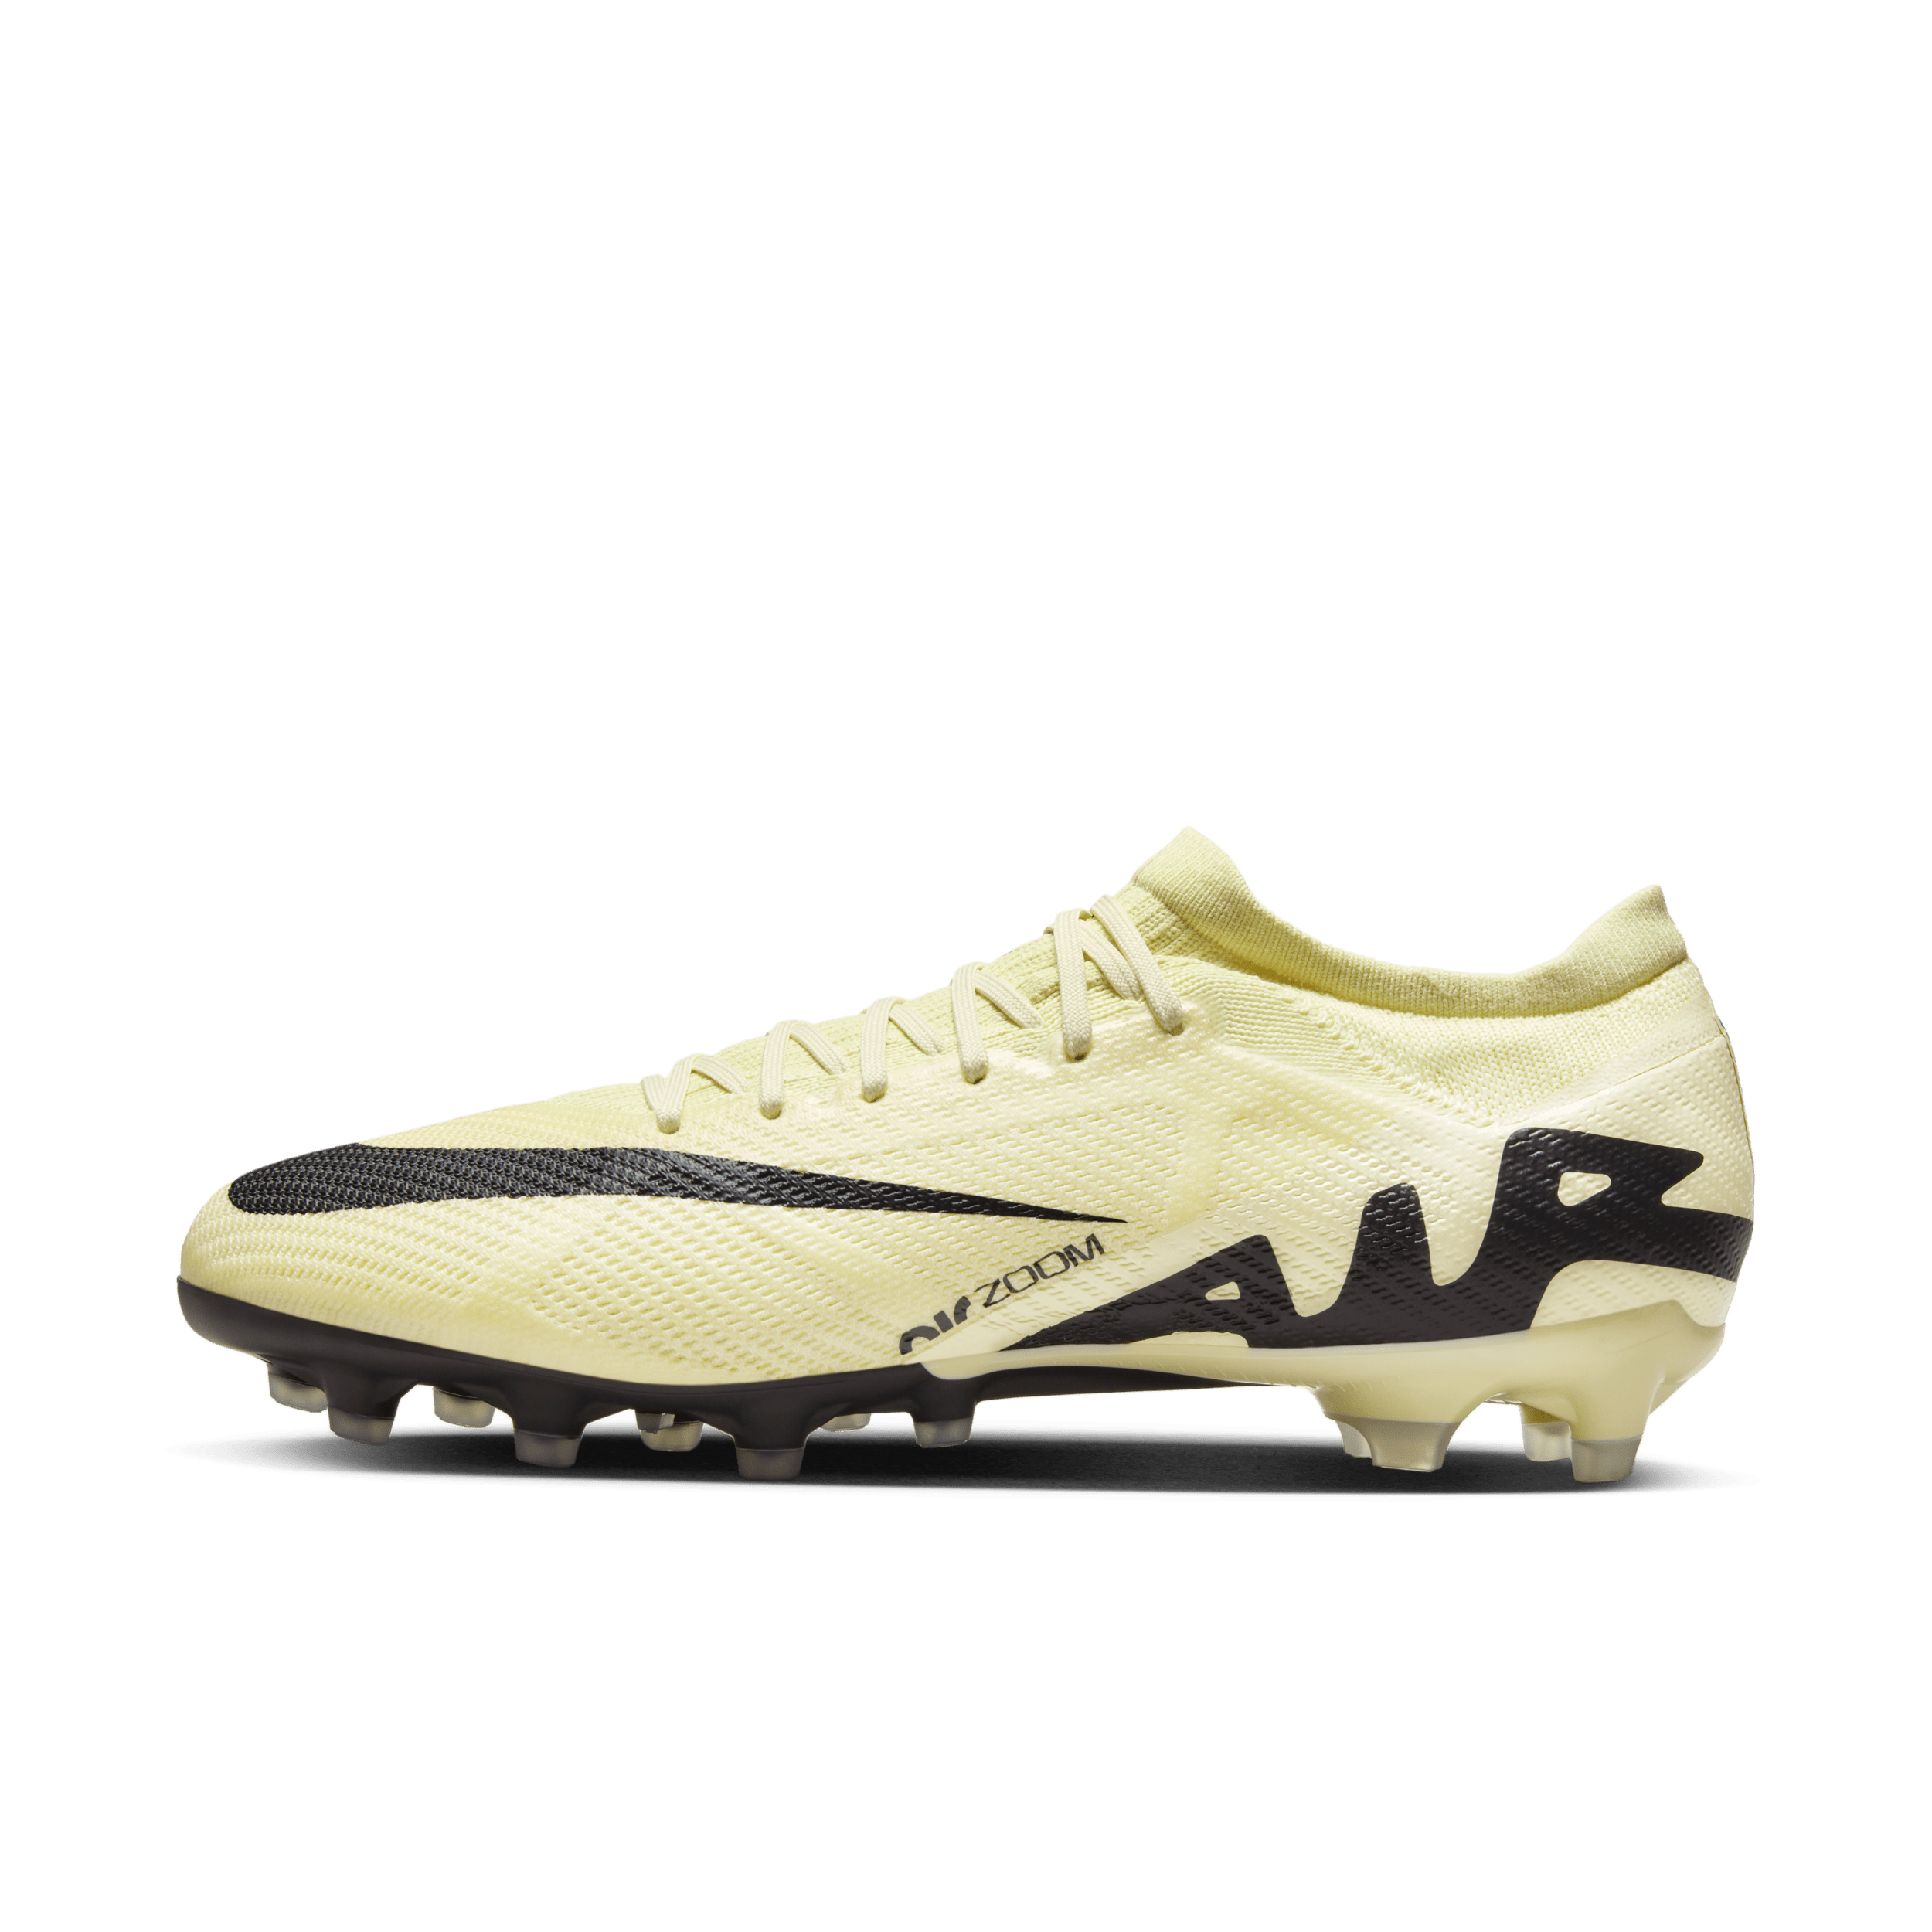 Nike Mercurial Vapor 15 Pro low-top voetbalschoen (kunstgras) - Geel